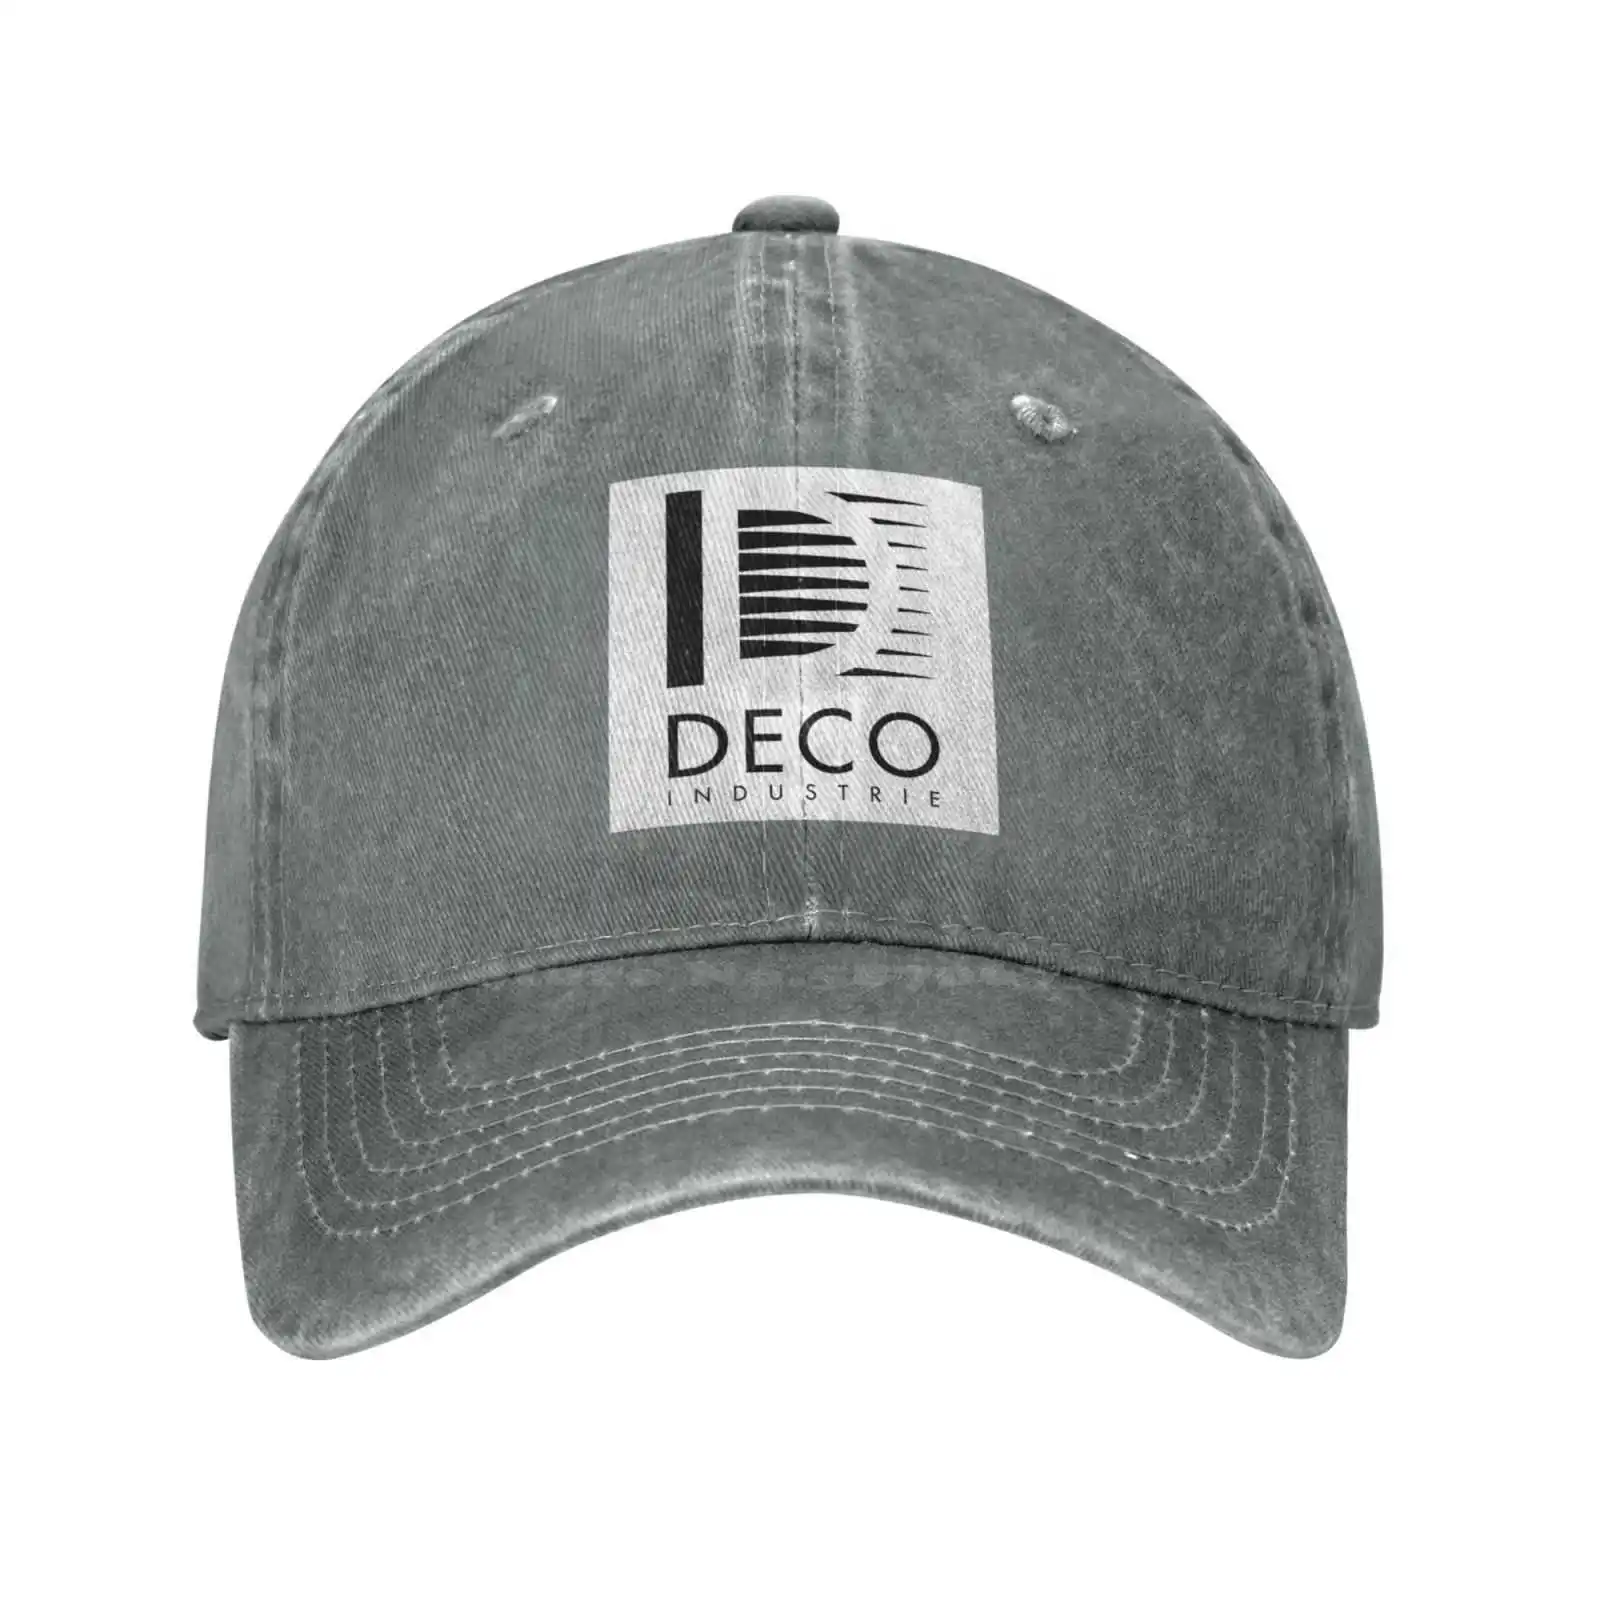 Графическая повседневная джинсовая кепка с логотипом Deco Industrie, вязаная шапка, бейсболка